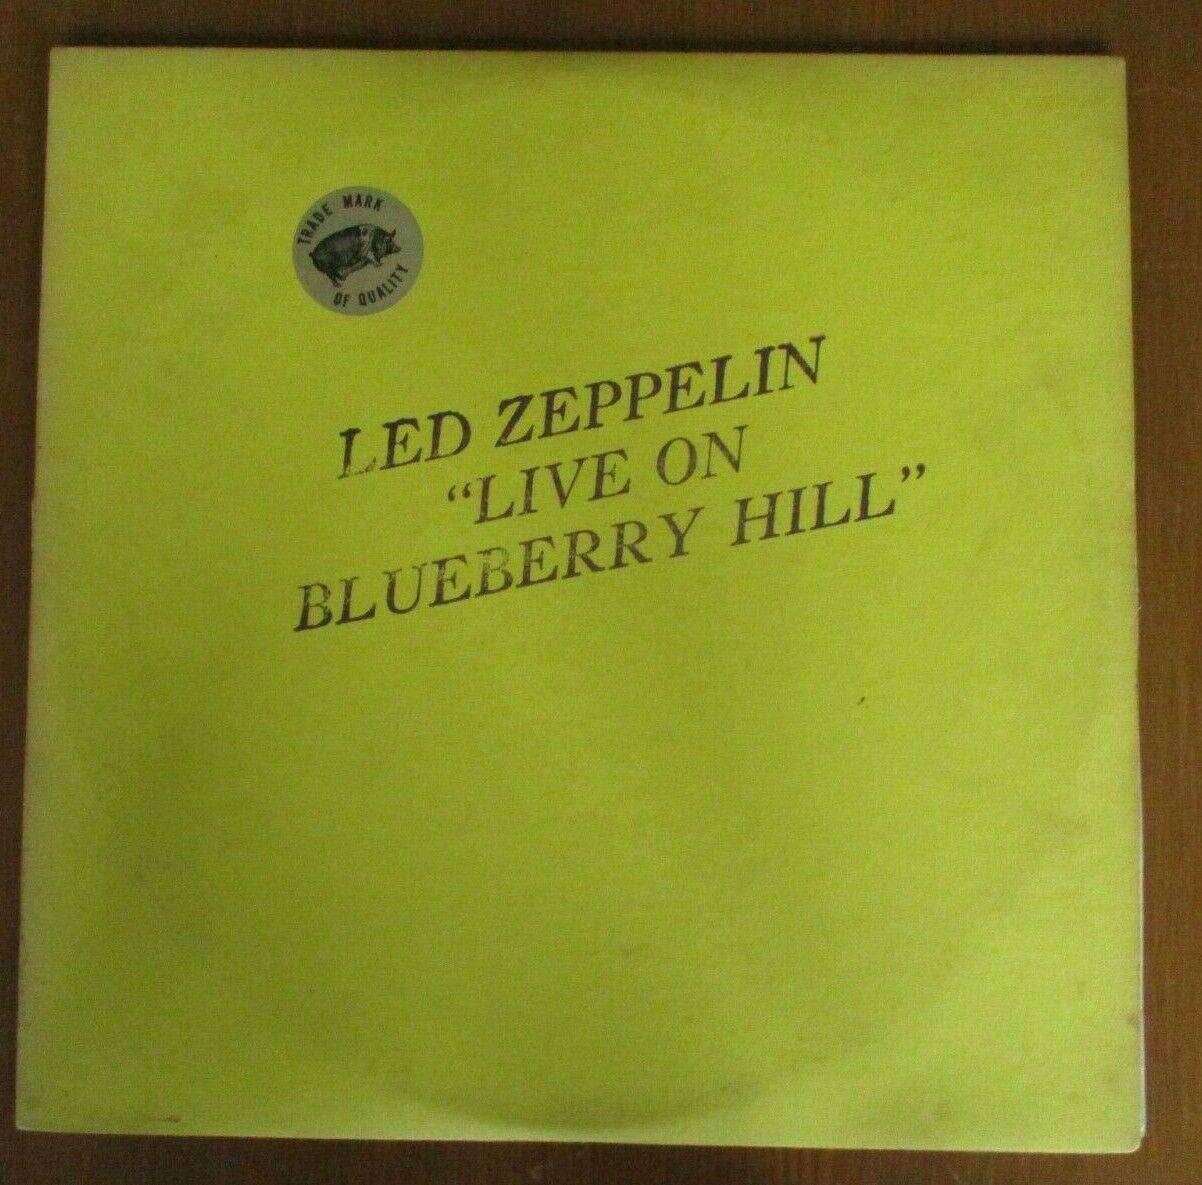 popsike.com - Live On Blueberry Hill Led Zeppelin 2 x Vinyl LP